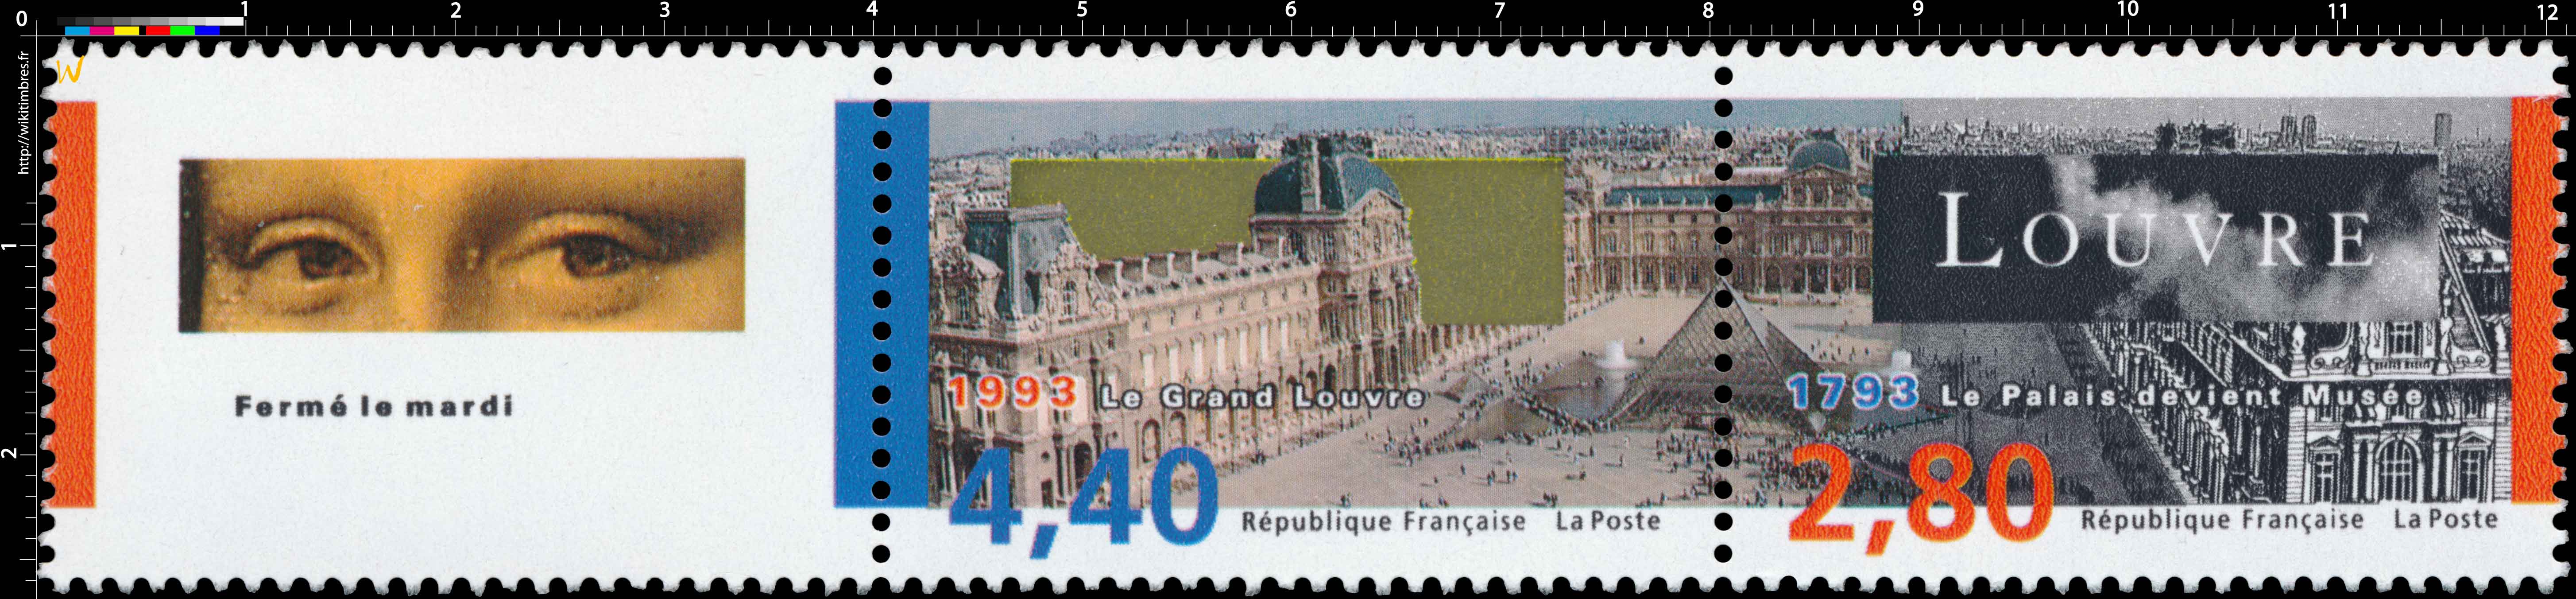 1993 Le Grand Louvre LOUVRE 1793 Le Palais devient Musée